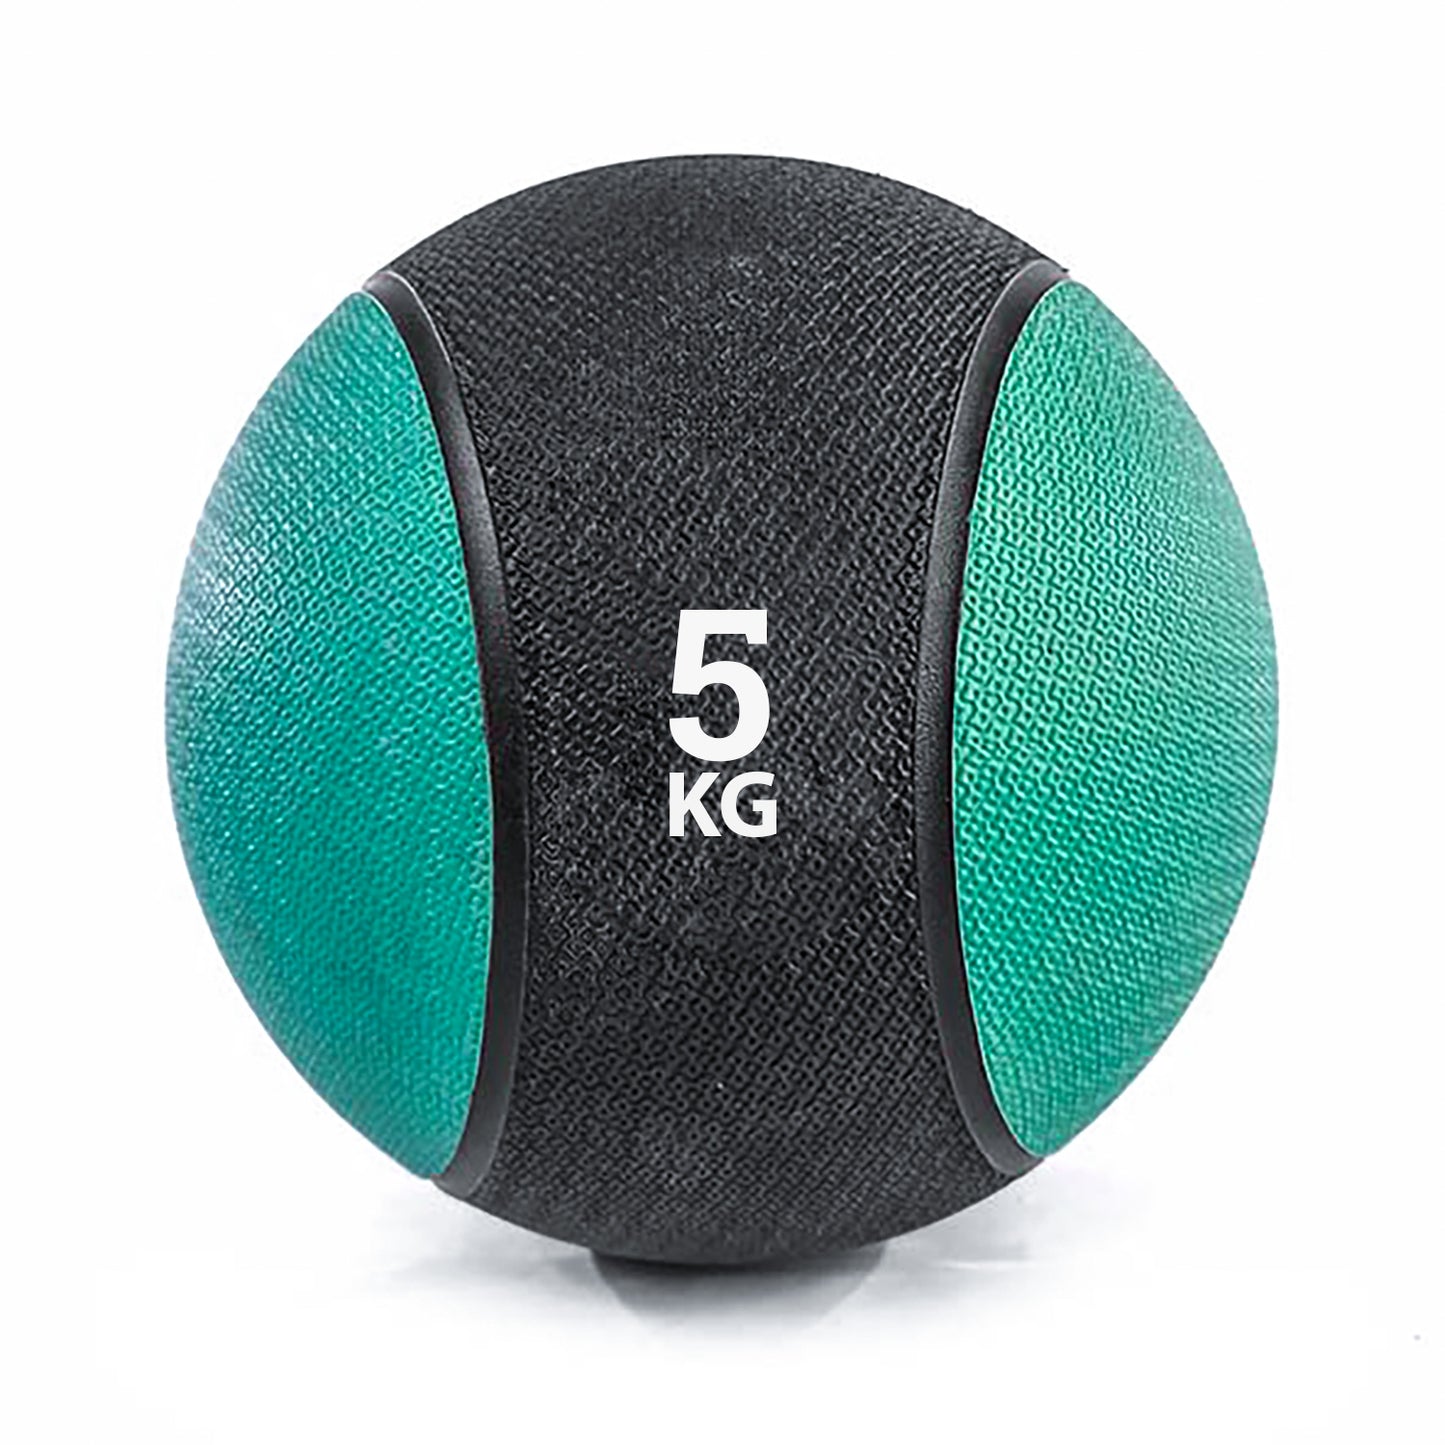 كرة طبية من المطاط لاعادة التأهيل و اللياقة البدنية - لون اسود و اخضر - وزن 5 كيلو جرام - Kanteen - كانتين